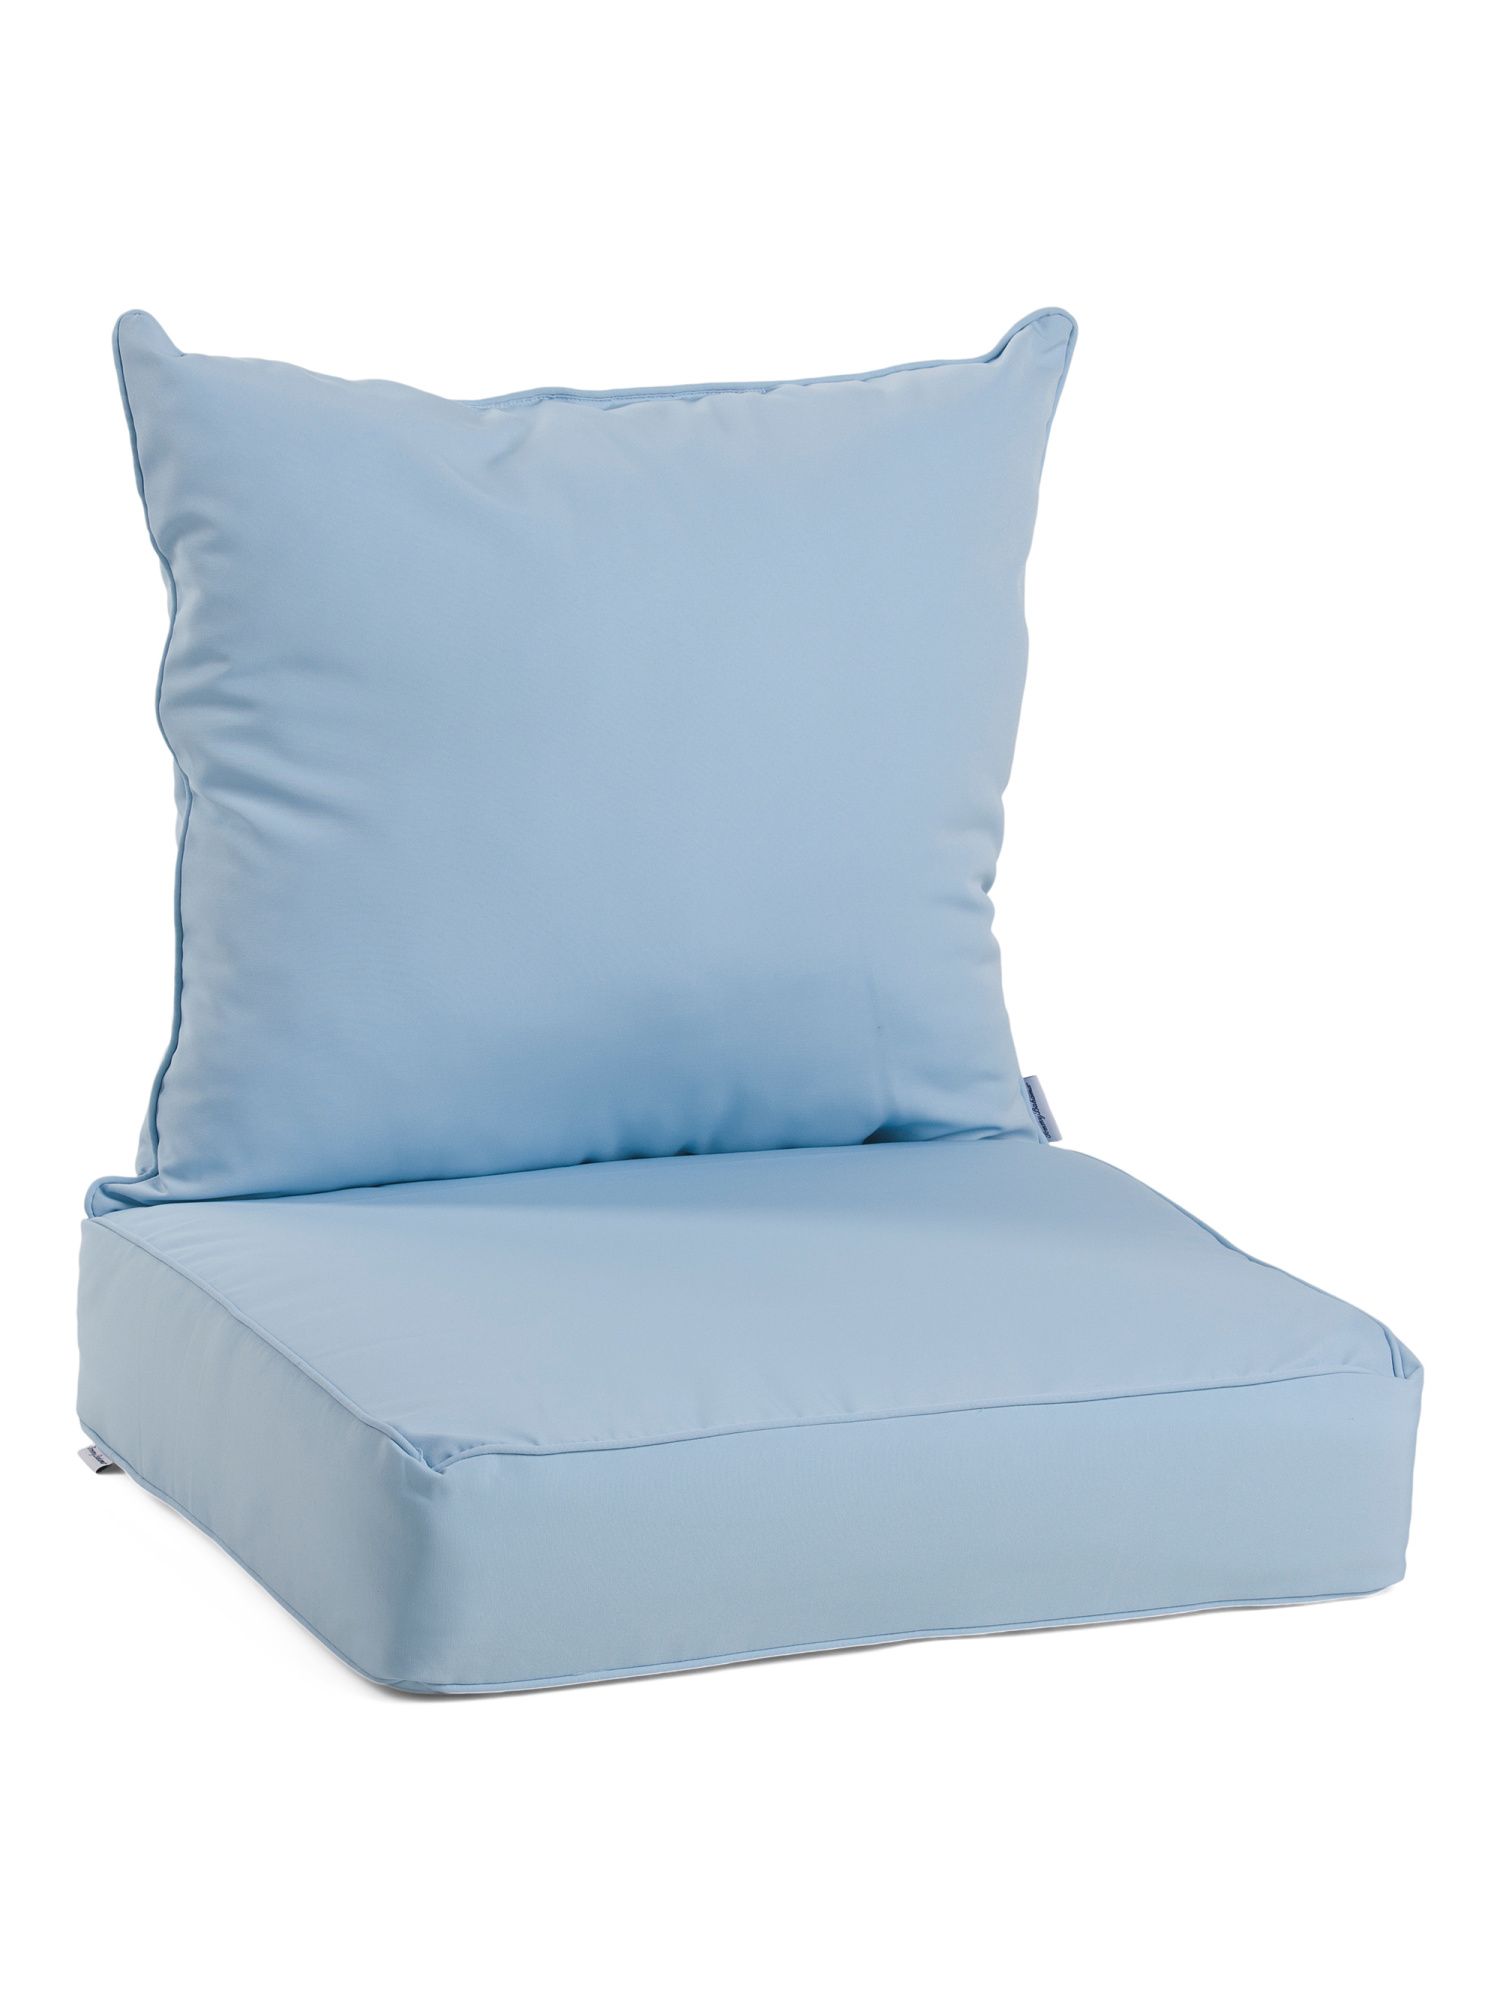 2pc Outdoor Deep Seat Cushion Set | TJ Maxx